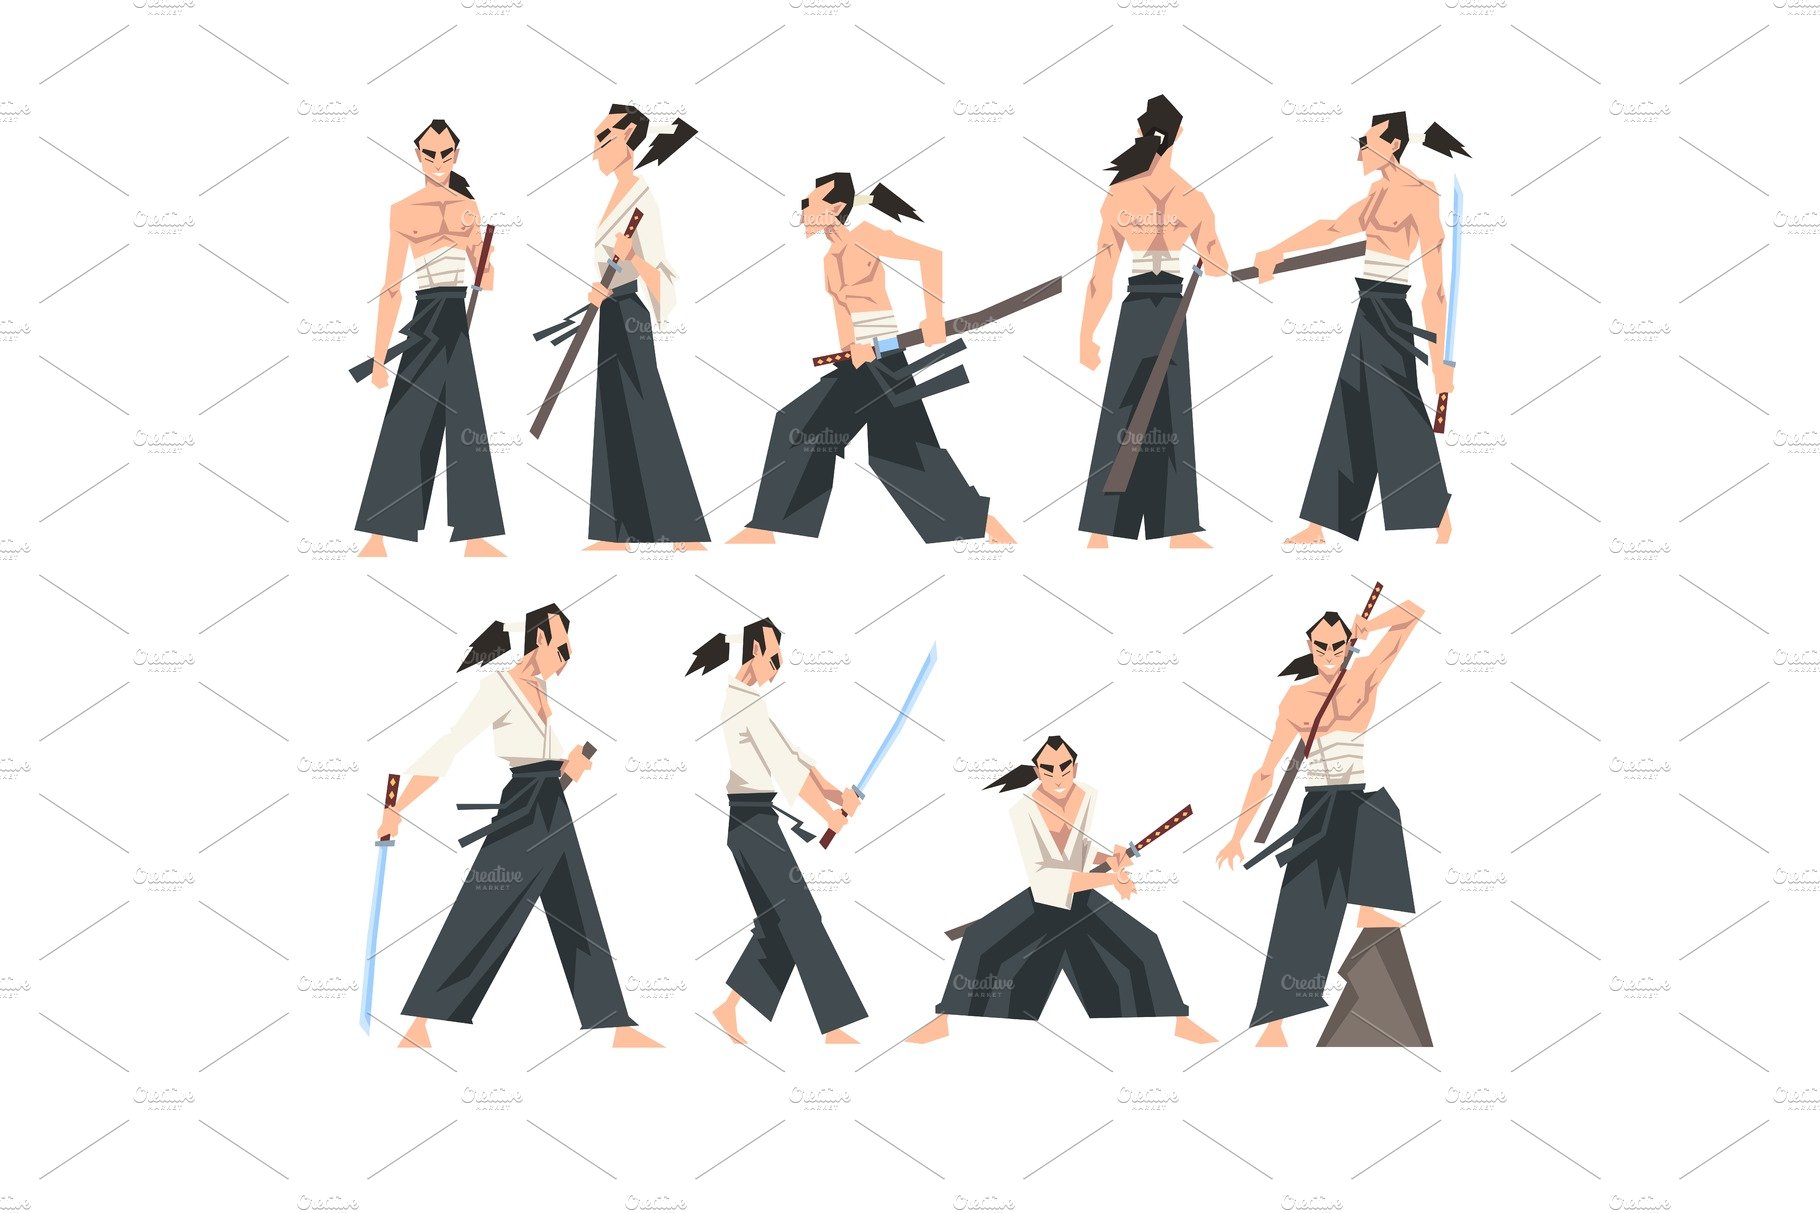 Samurai Character Wearing Hakama cover image.